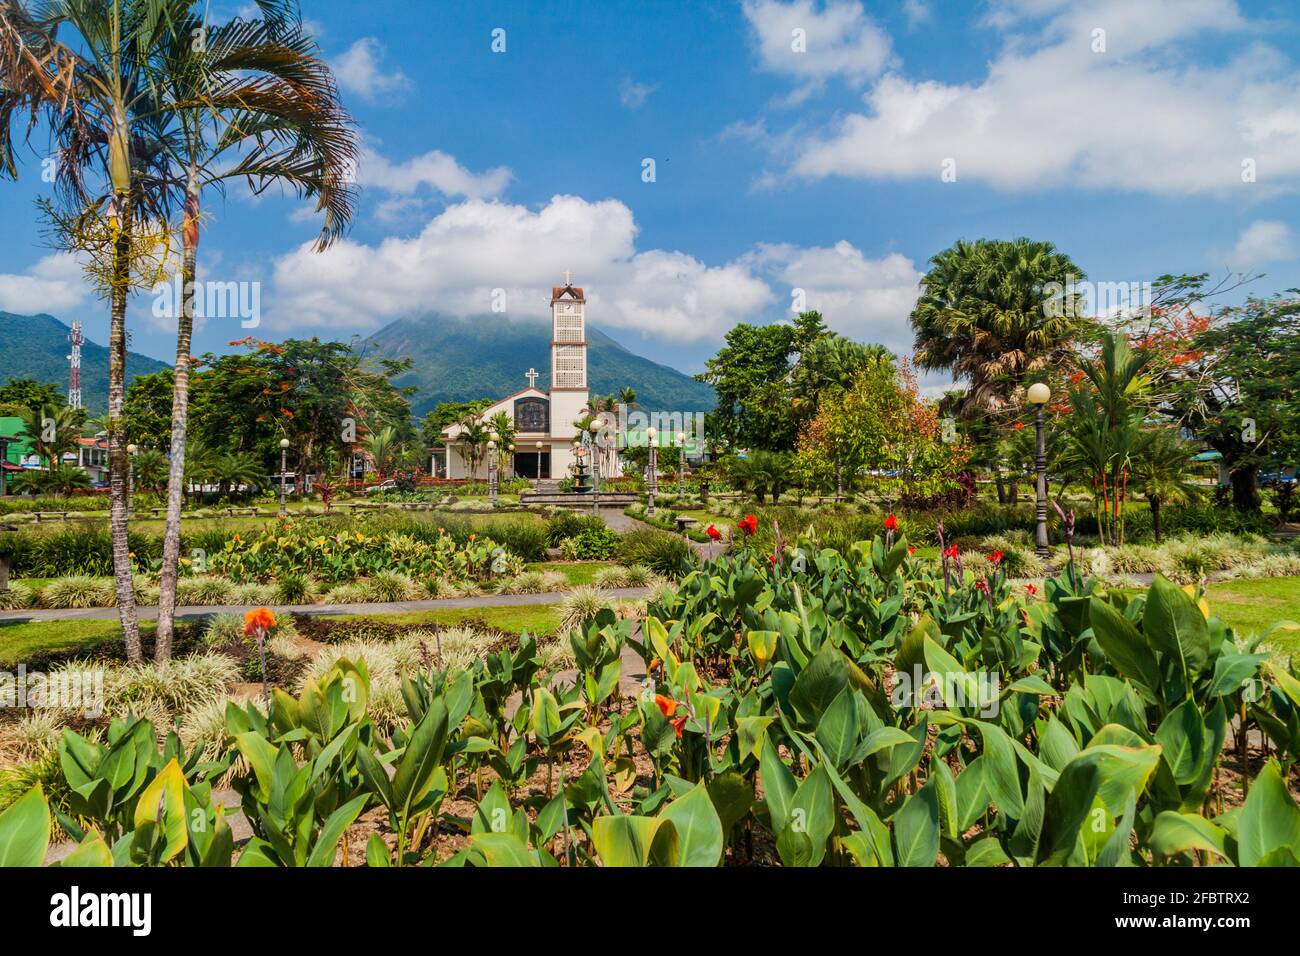 Parque Central square in La Fortuna village, Costa Rica Stock Photo